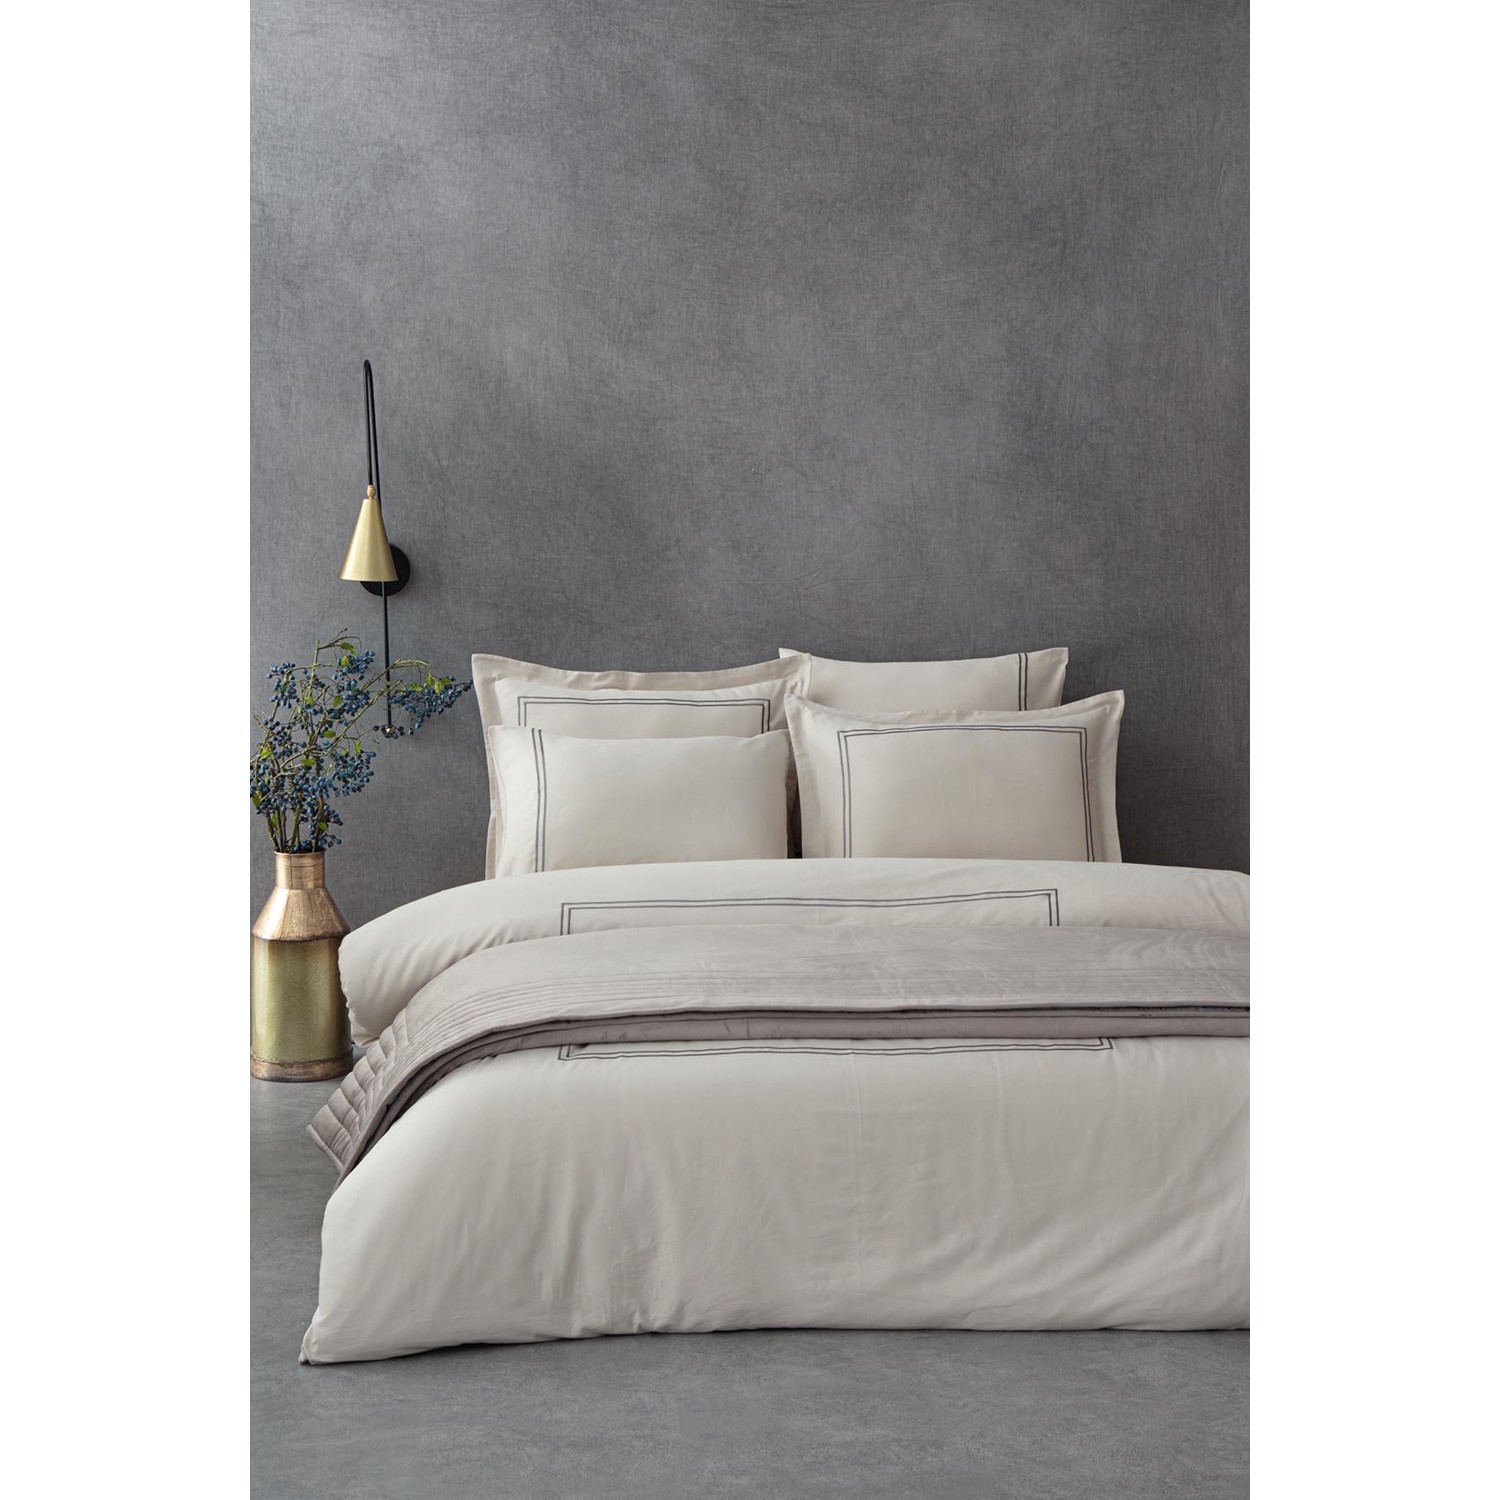 Экокотон Lavin King Size Комплект постельного белья 100% органический хлопок сатин с вышивкой бежево-серый 240X220 см